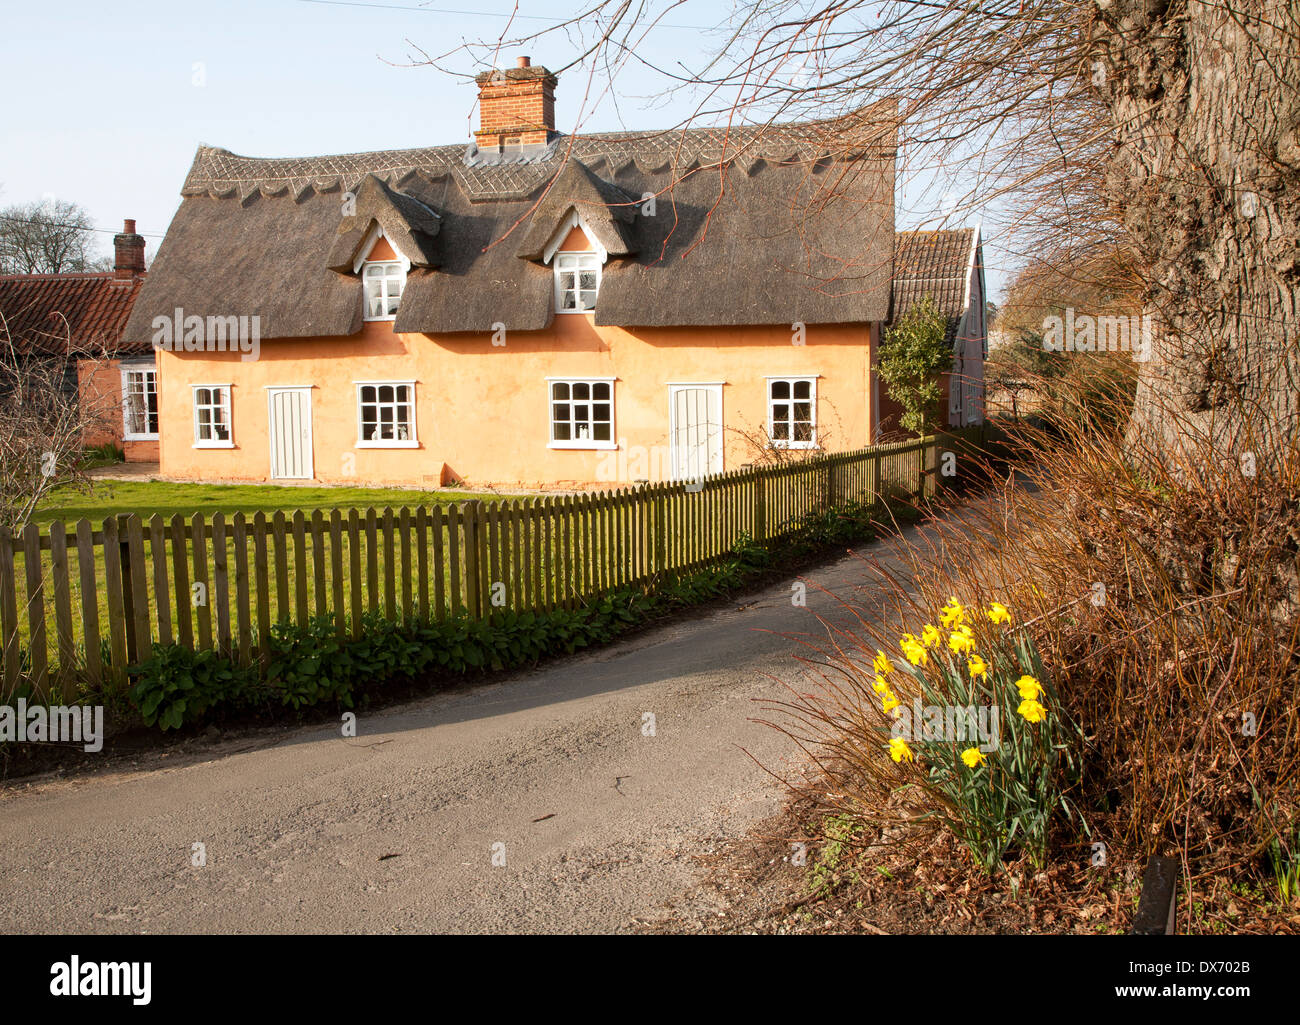 Jolie couleur ocre chaumière historique dans le village de Ufford, Suffolk, Angleterre Banque D'Images